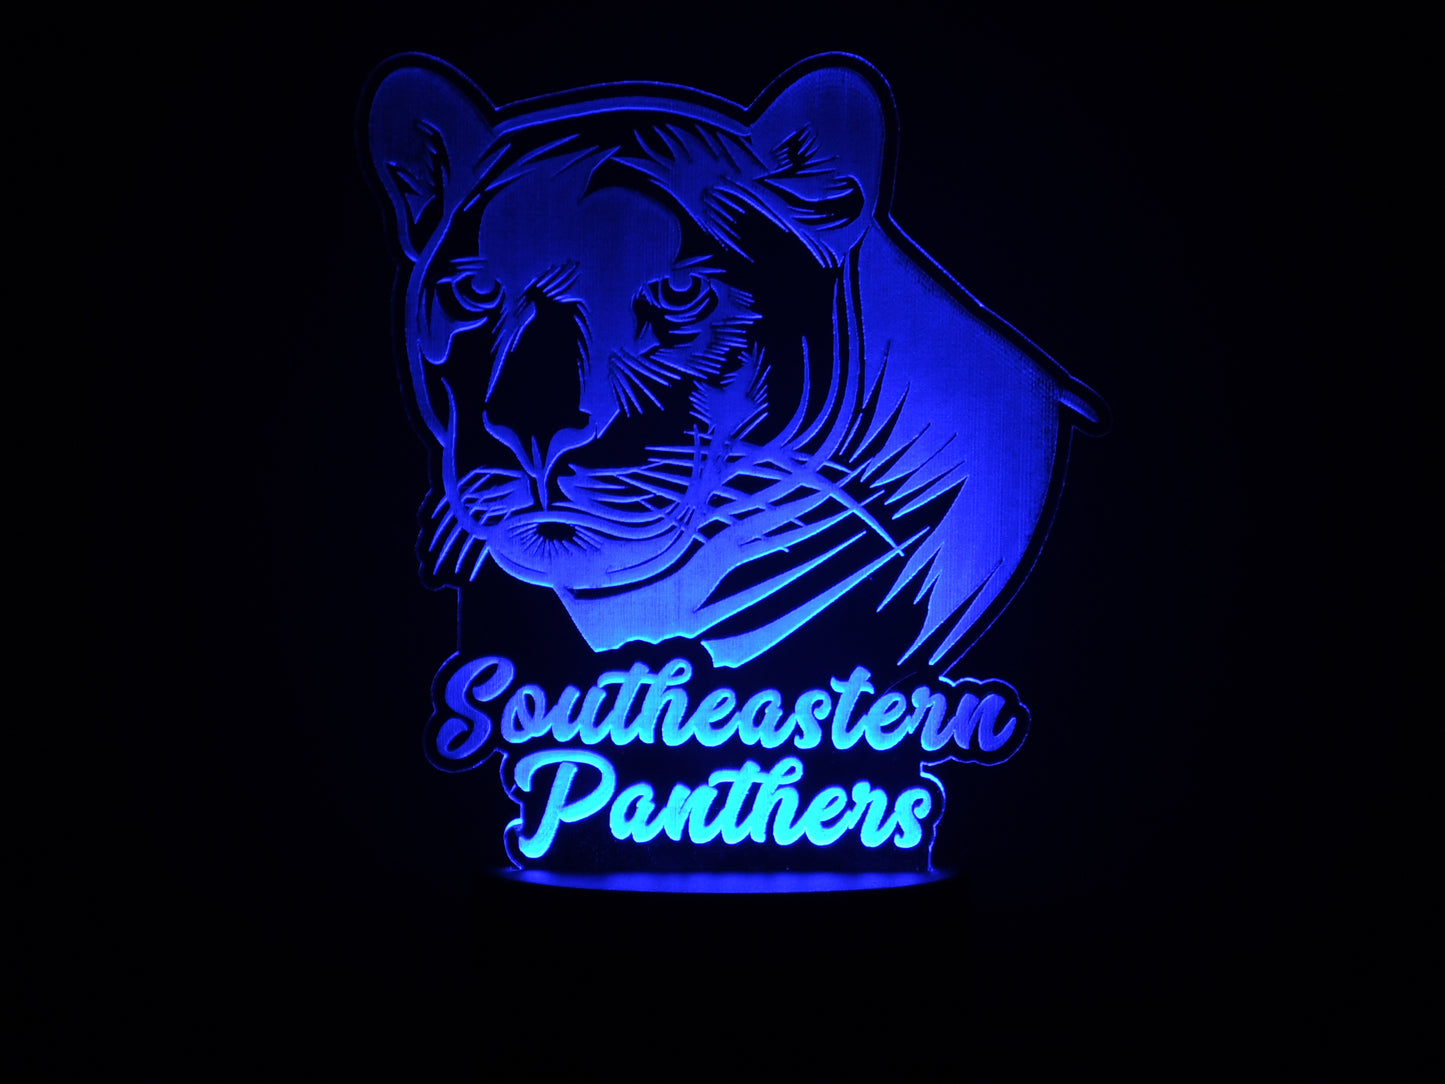 Southeastern Panthers School Mascot Acrylic Illusion Light